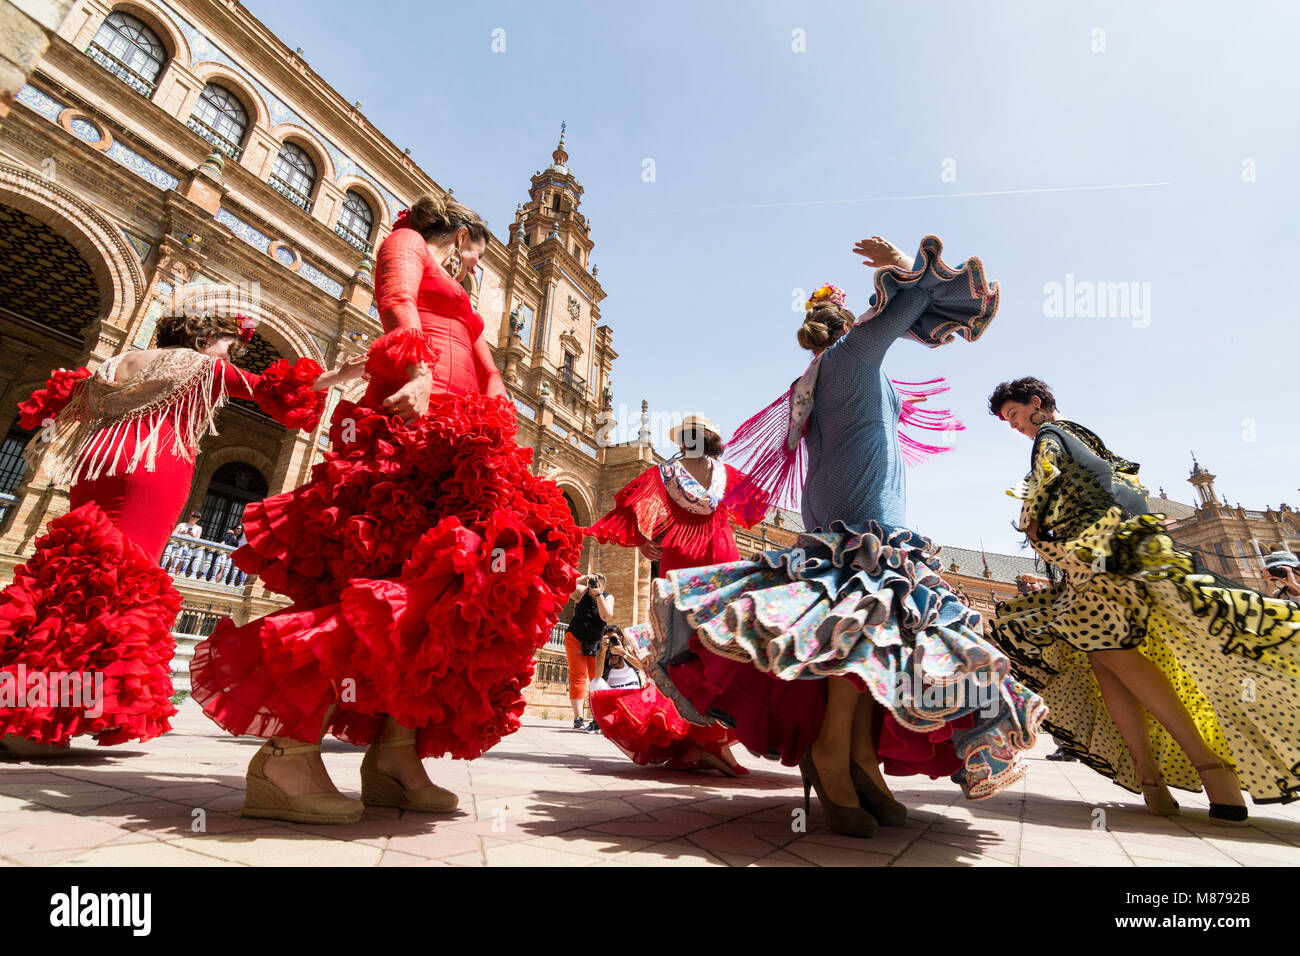 Sevilla, España - Mayo 2017: mujeres jóvenes bailar flamenco en la Plaza de España Foto de stock